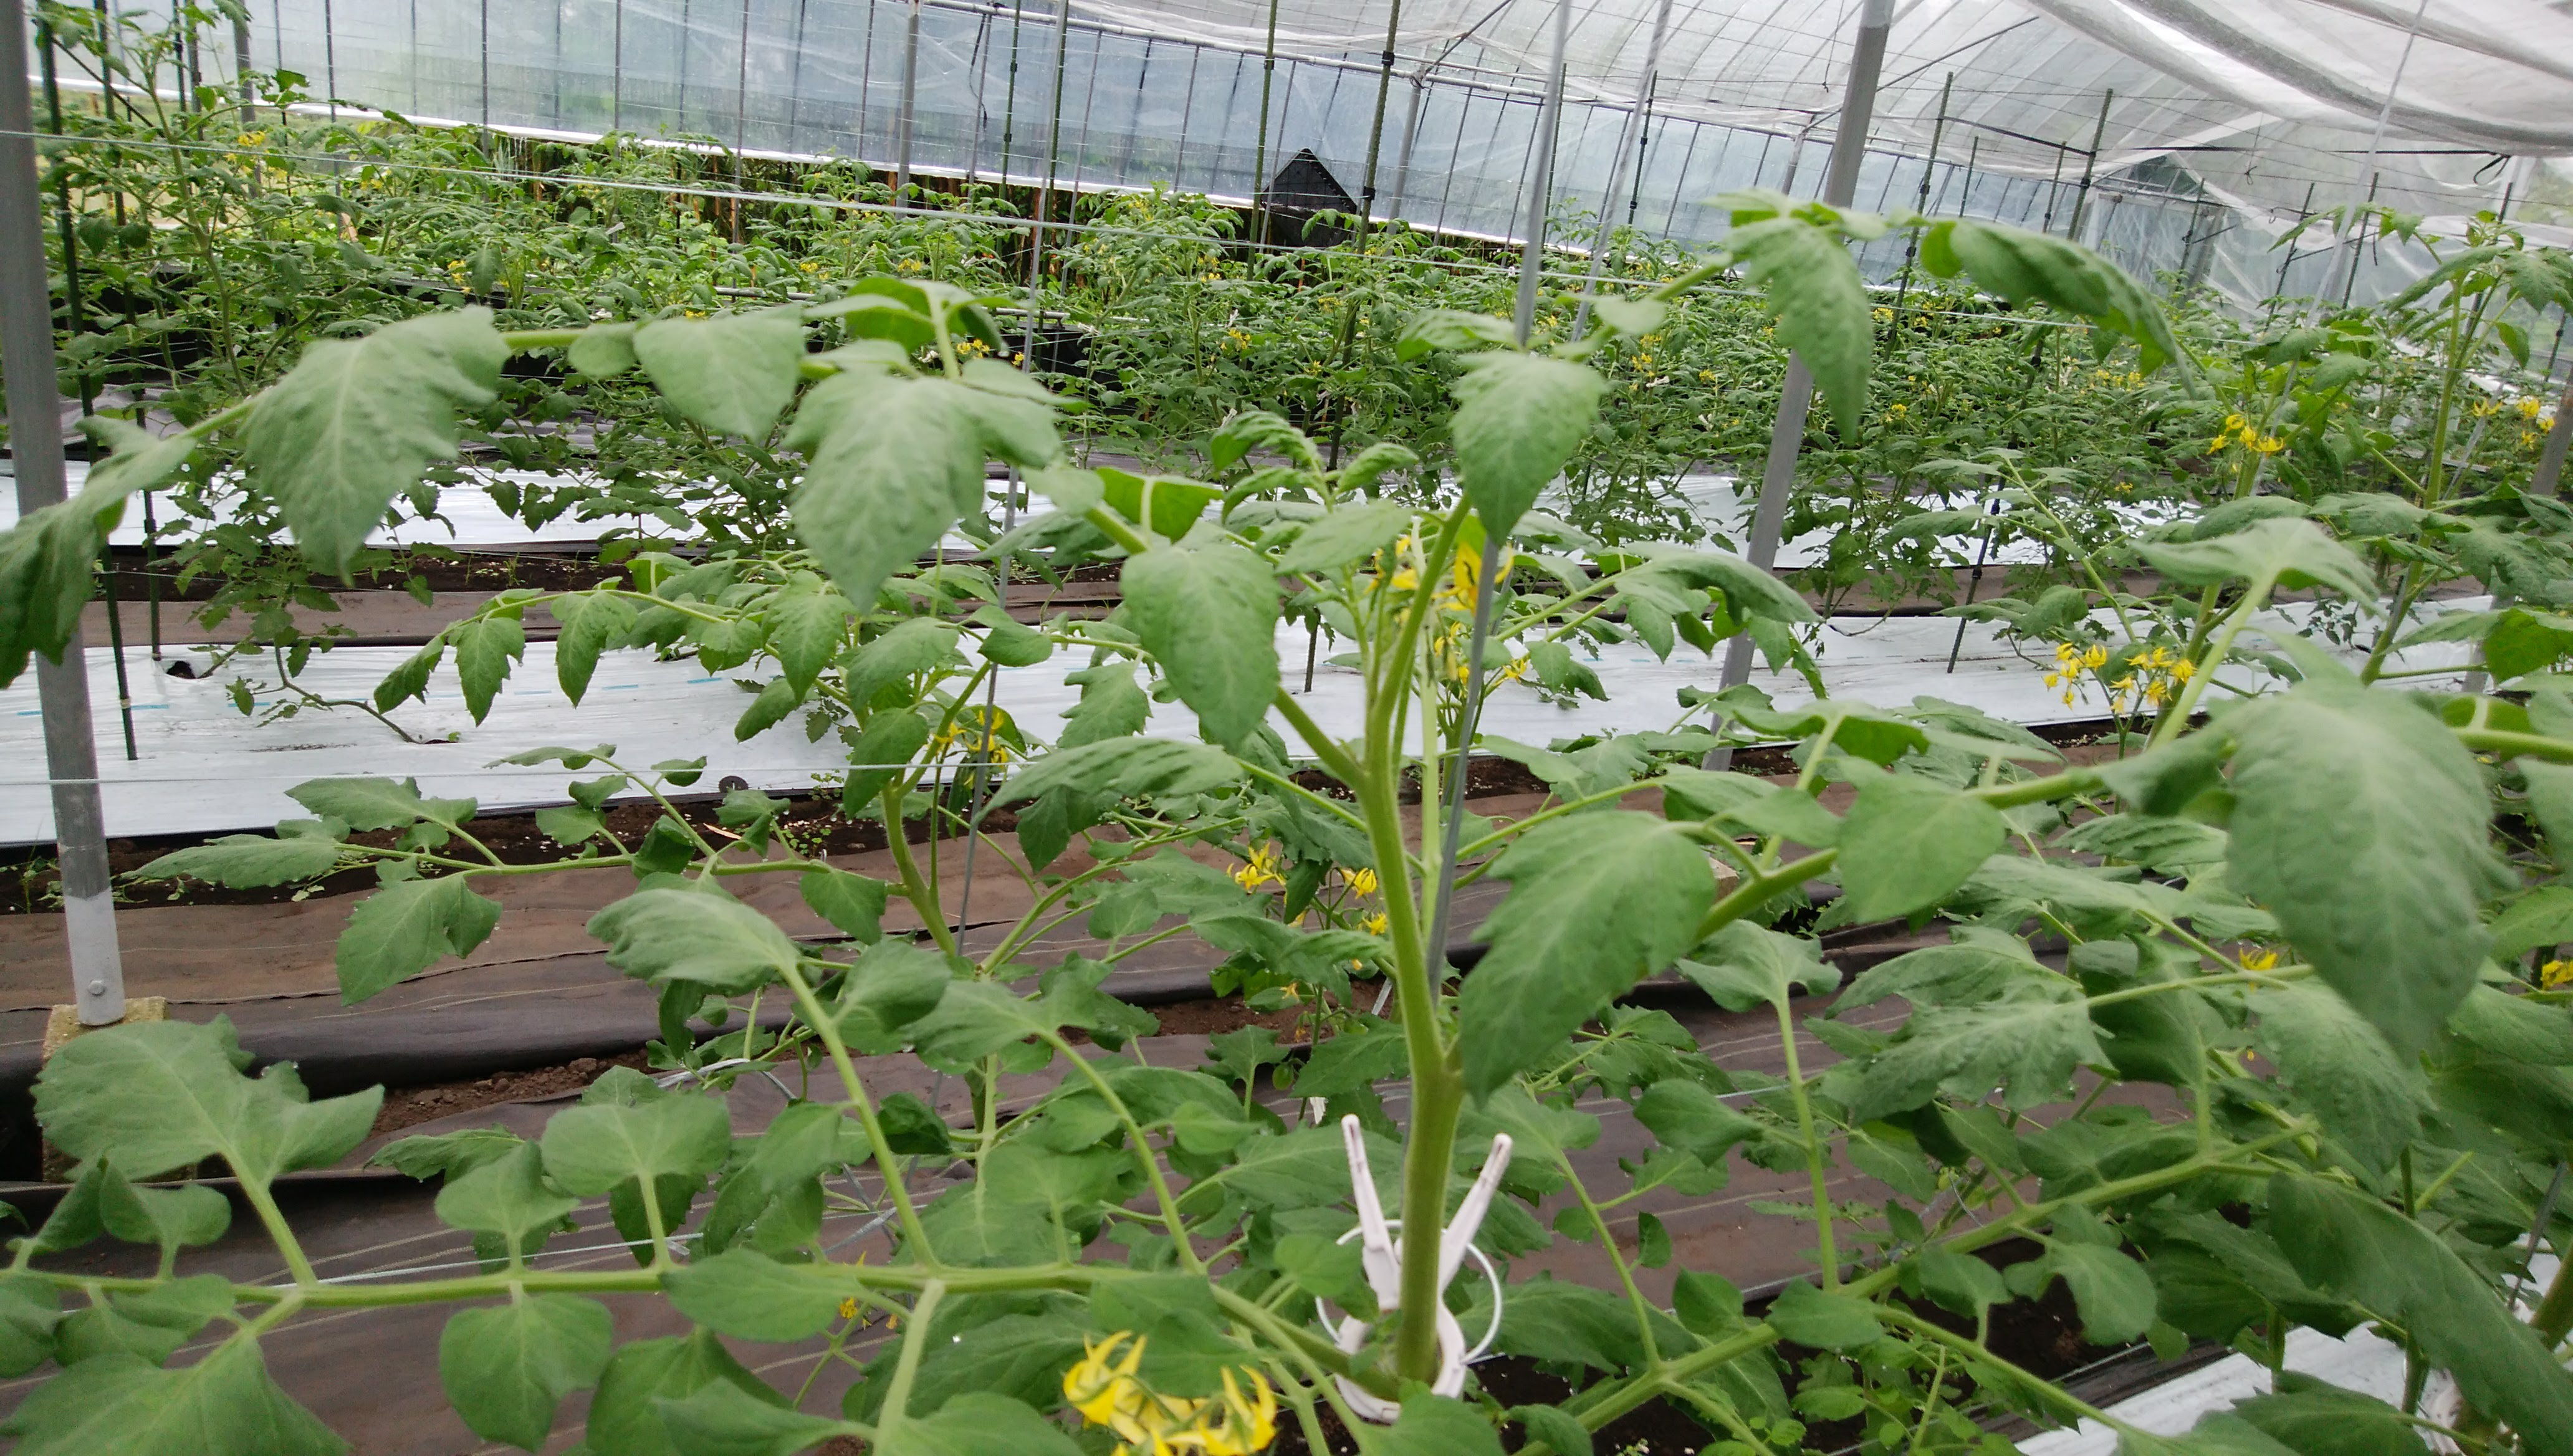 ミニトマト栽培でよくある芯止まりの対処法 原因は生理障害 無色の畑のブログ